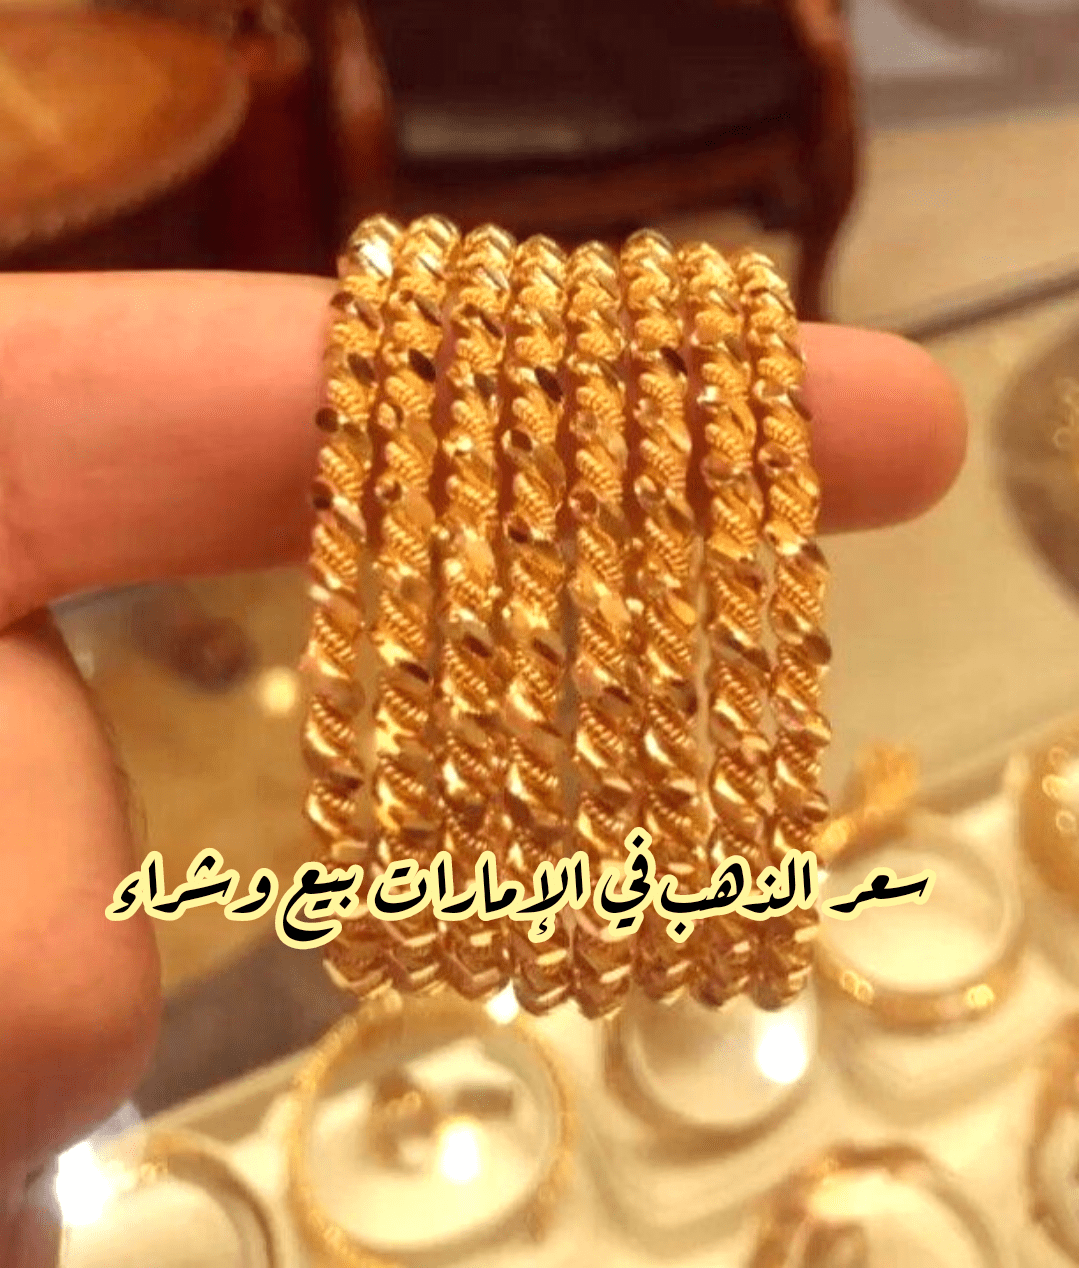 سعر الذهب في الإمارات بيع وشراء 